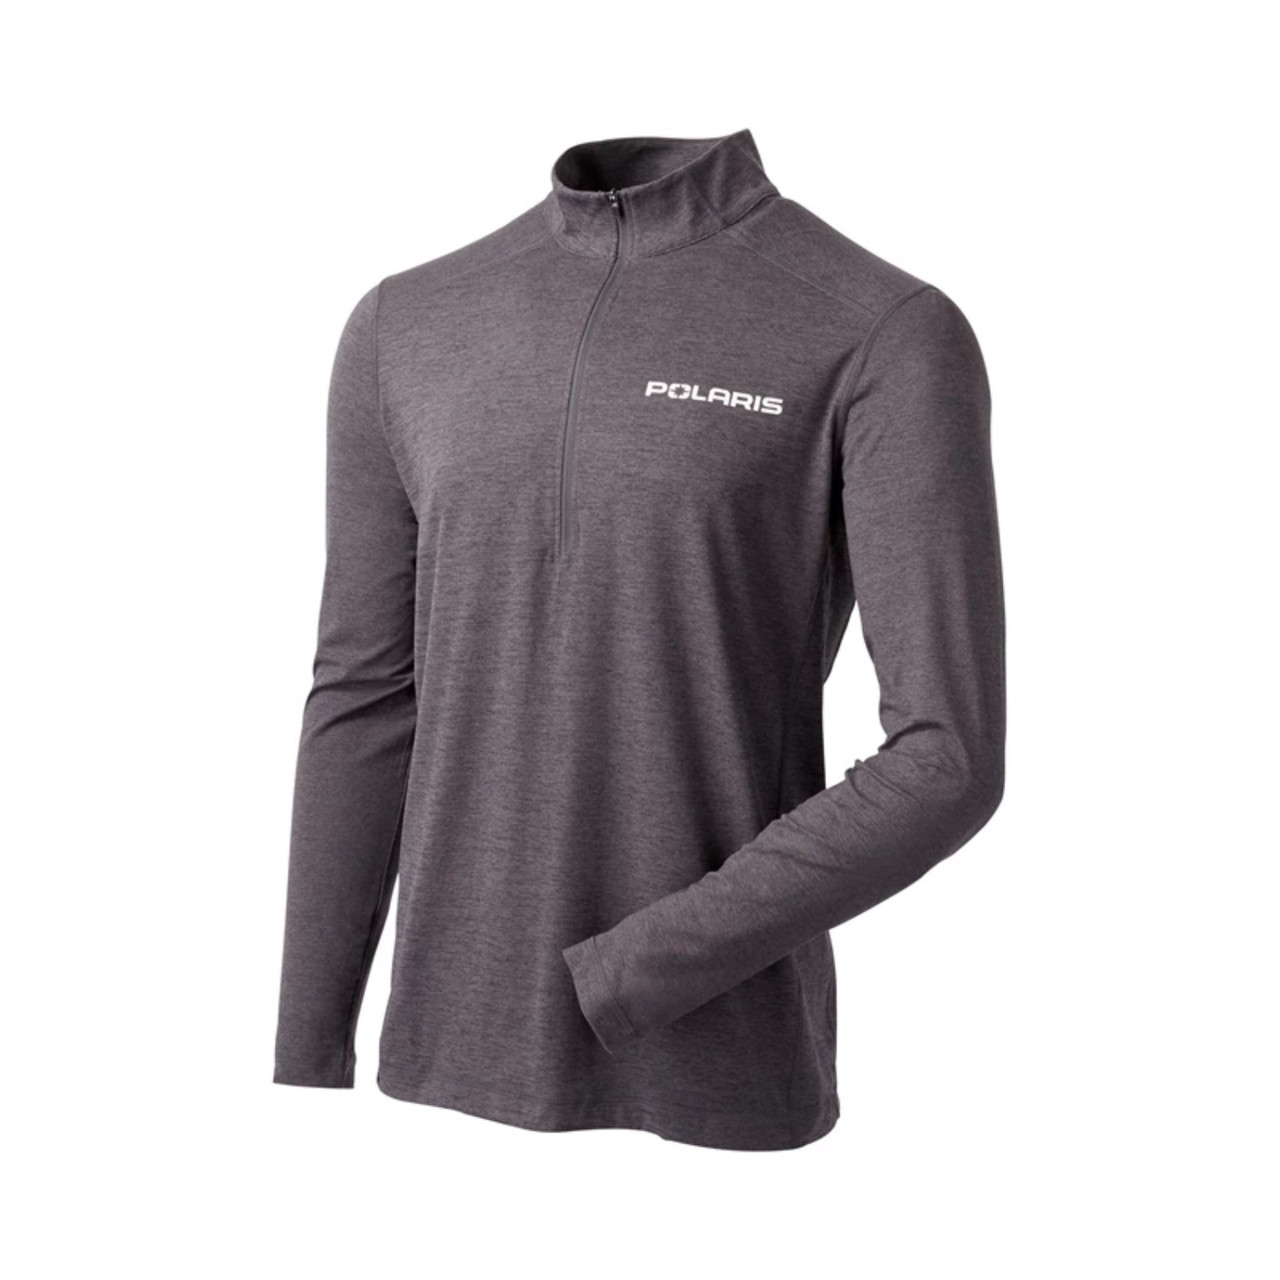 Polaris New OEM L Gray Men's Flexible Fit Adapt Quarter-Zip Shirt, 286252106